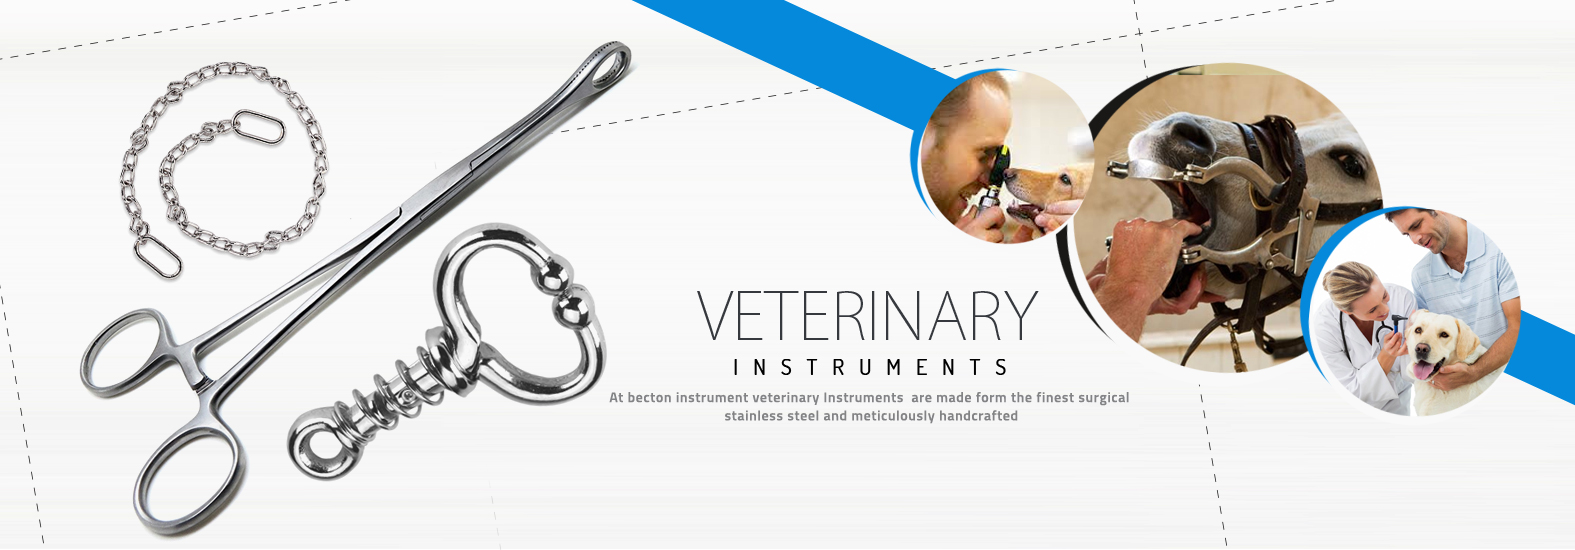 Veternary Instruments